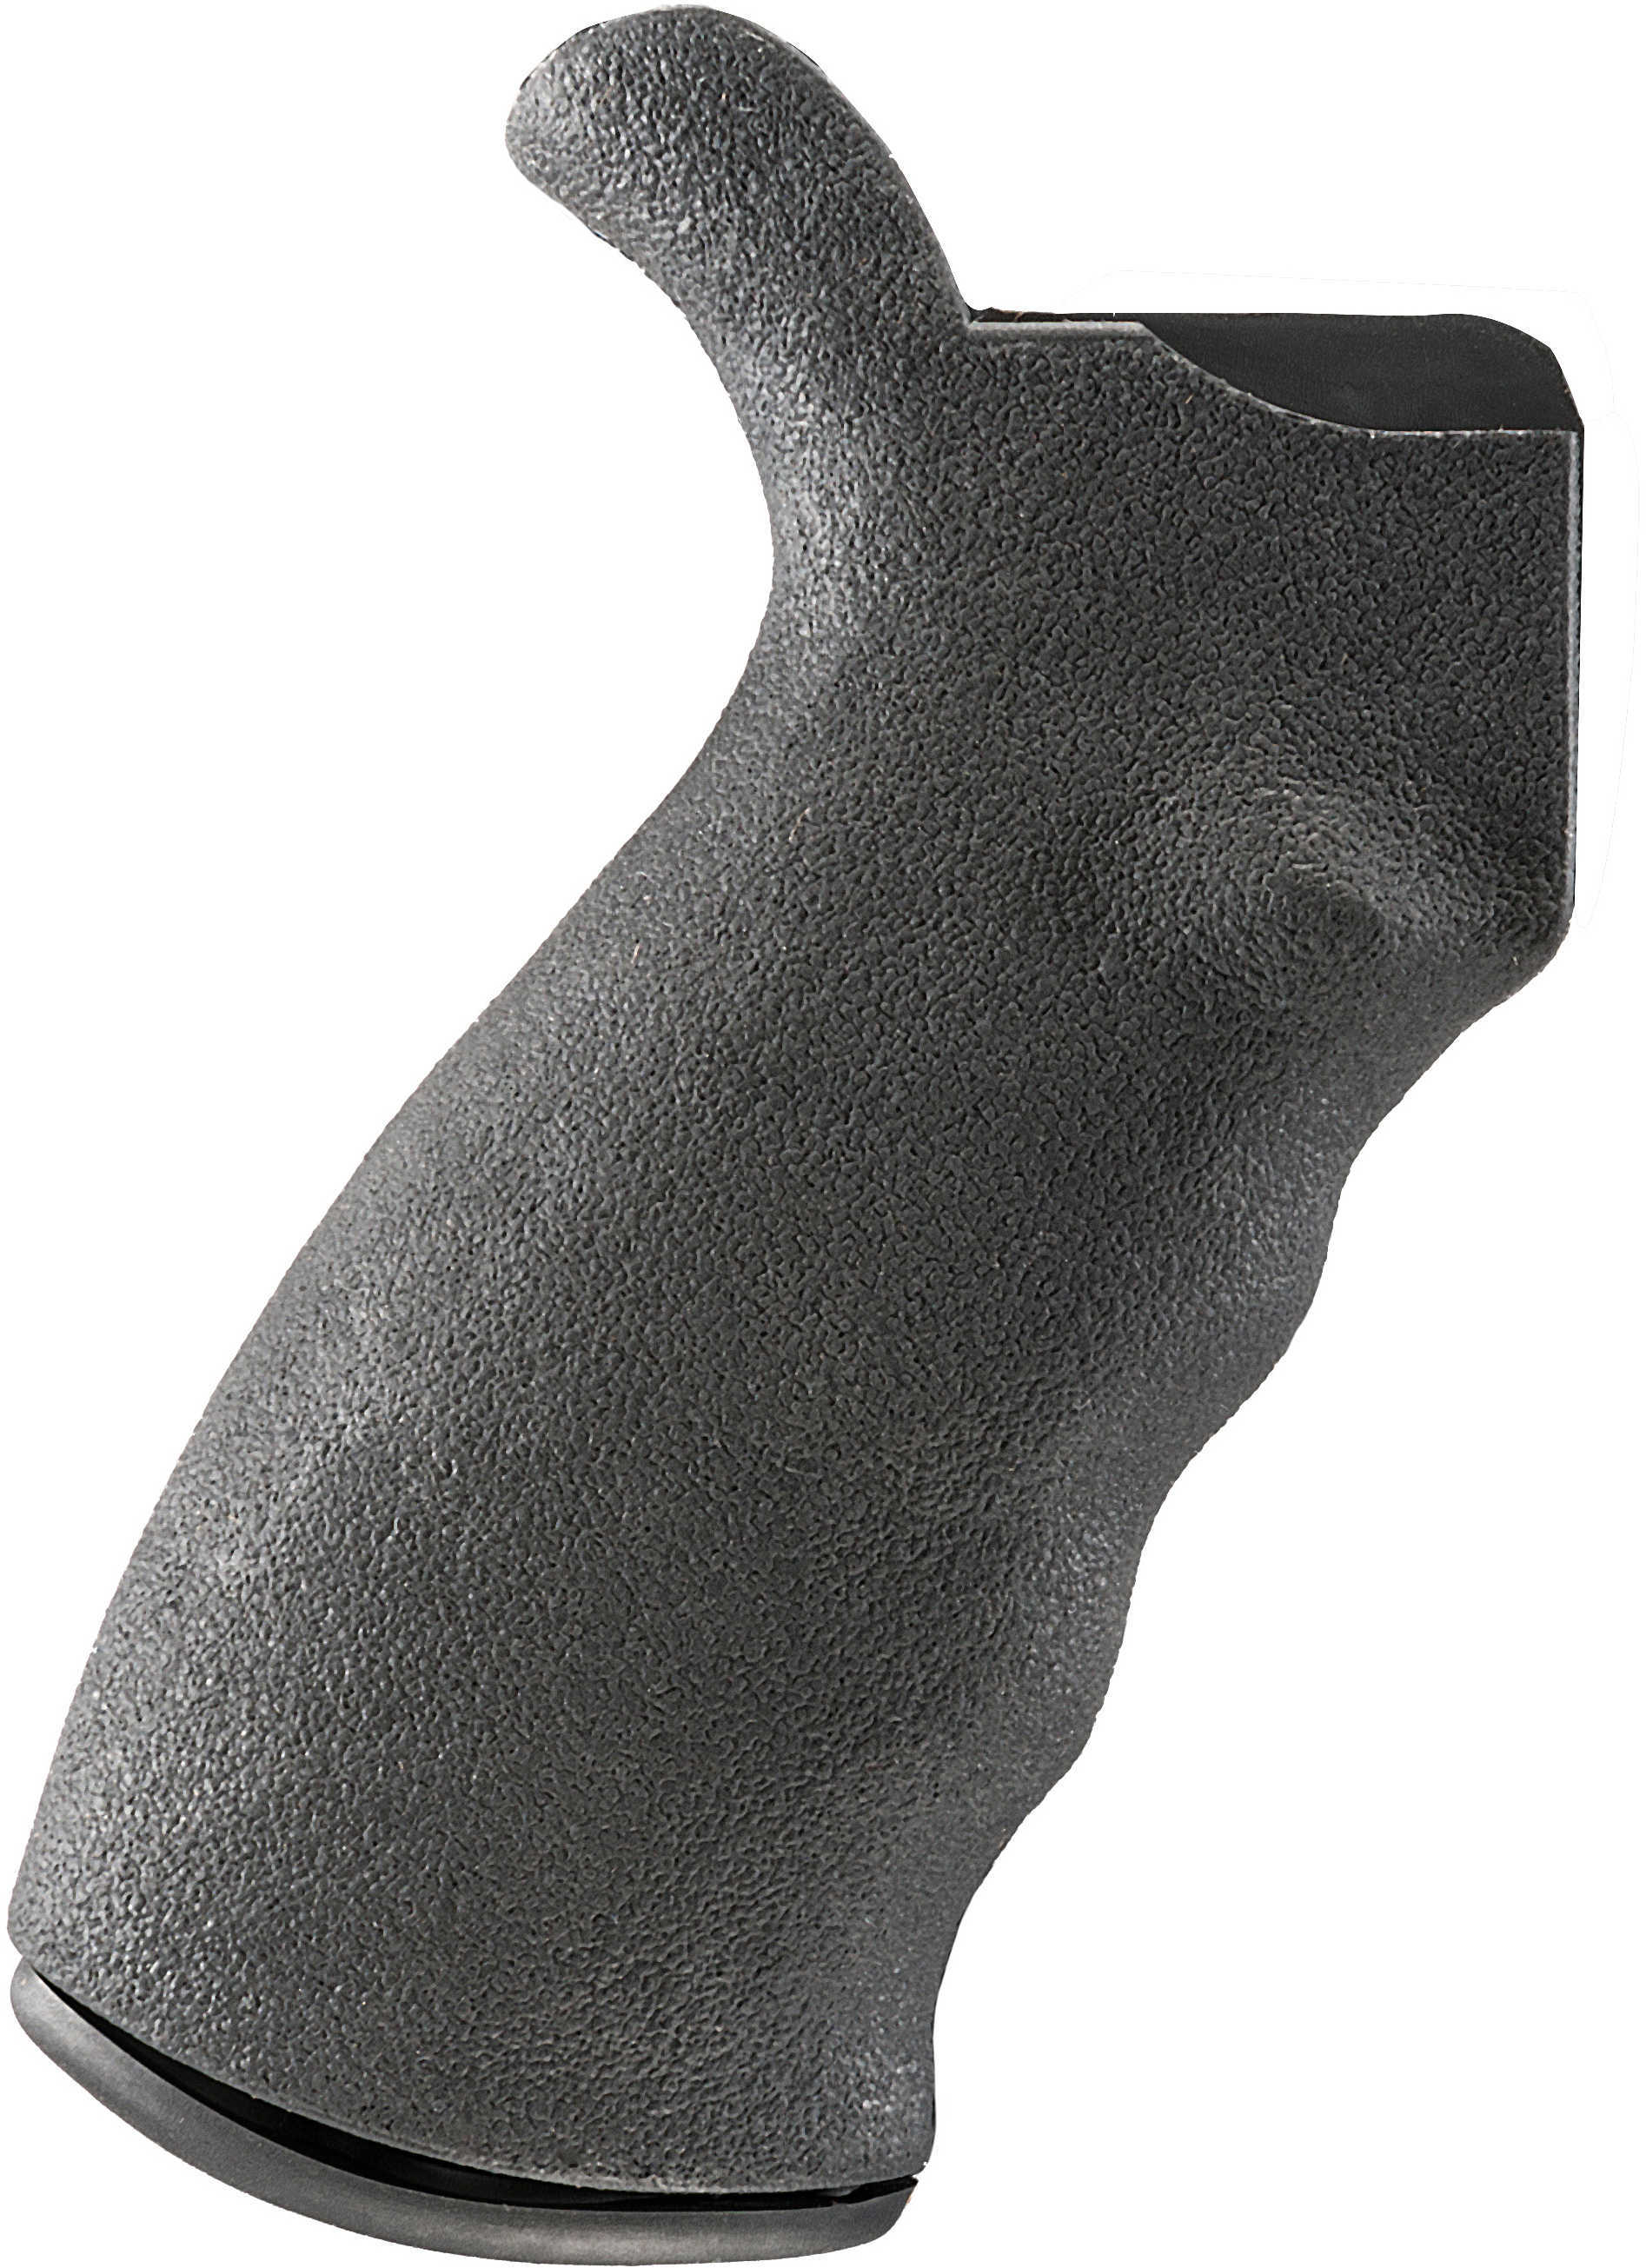 Ergo AR 15/M16 Grip Kit Right Hand Black Standard Frame 4000-BK